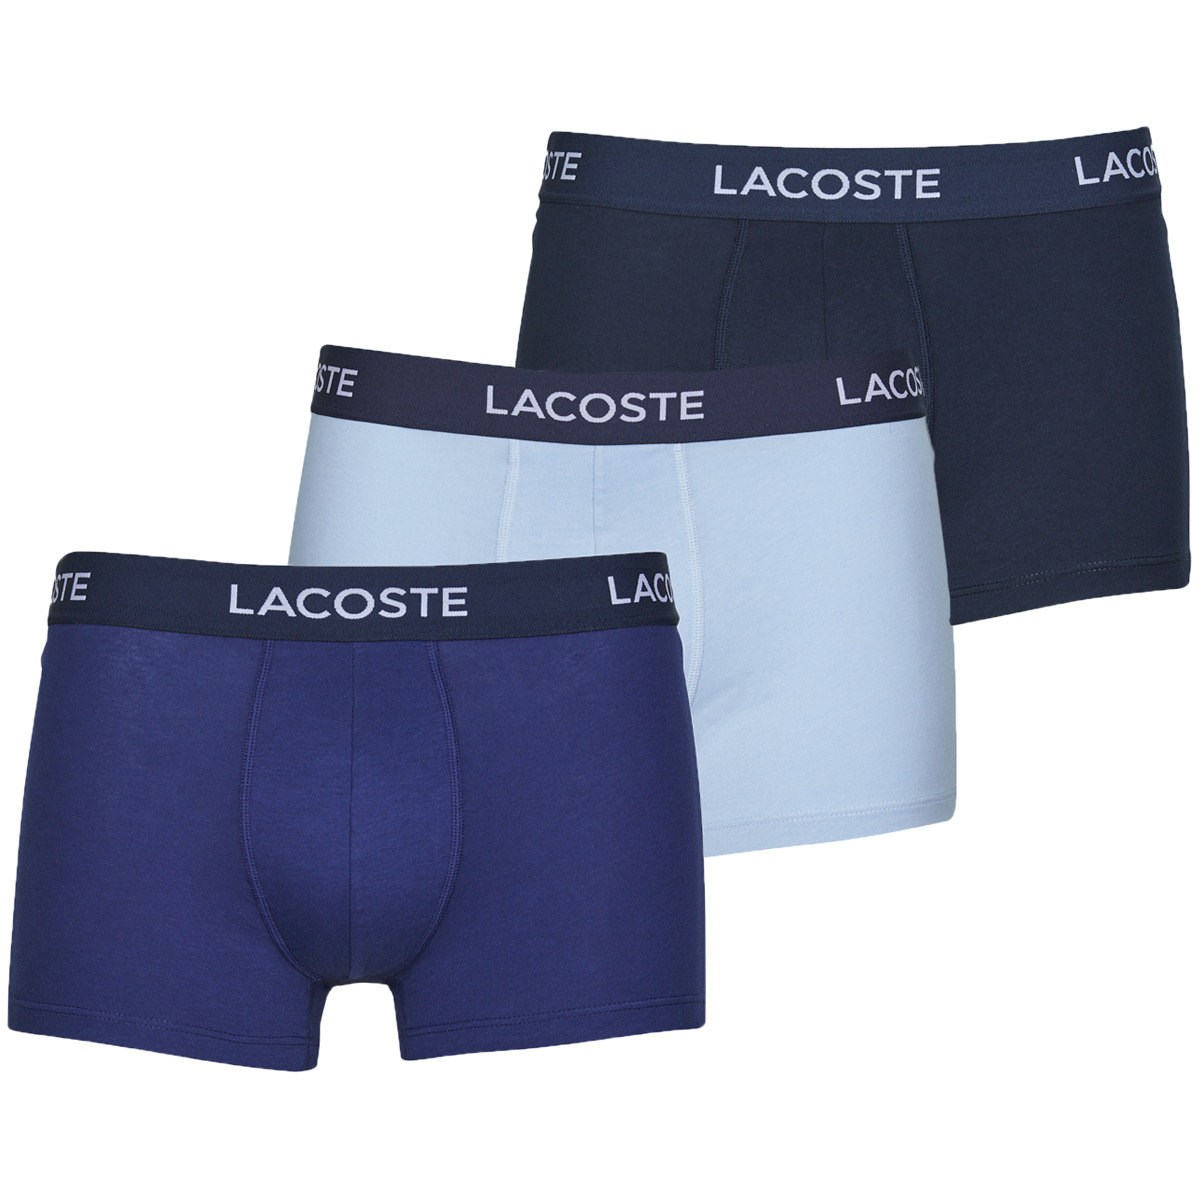 Lacoste Lacoste Tiebreaker Silicone Strap Montre Boxer Lacoste 5H7686 X3 Preto / Azul